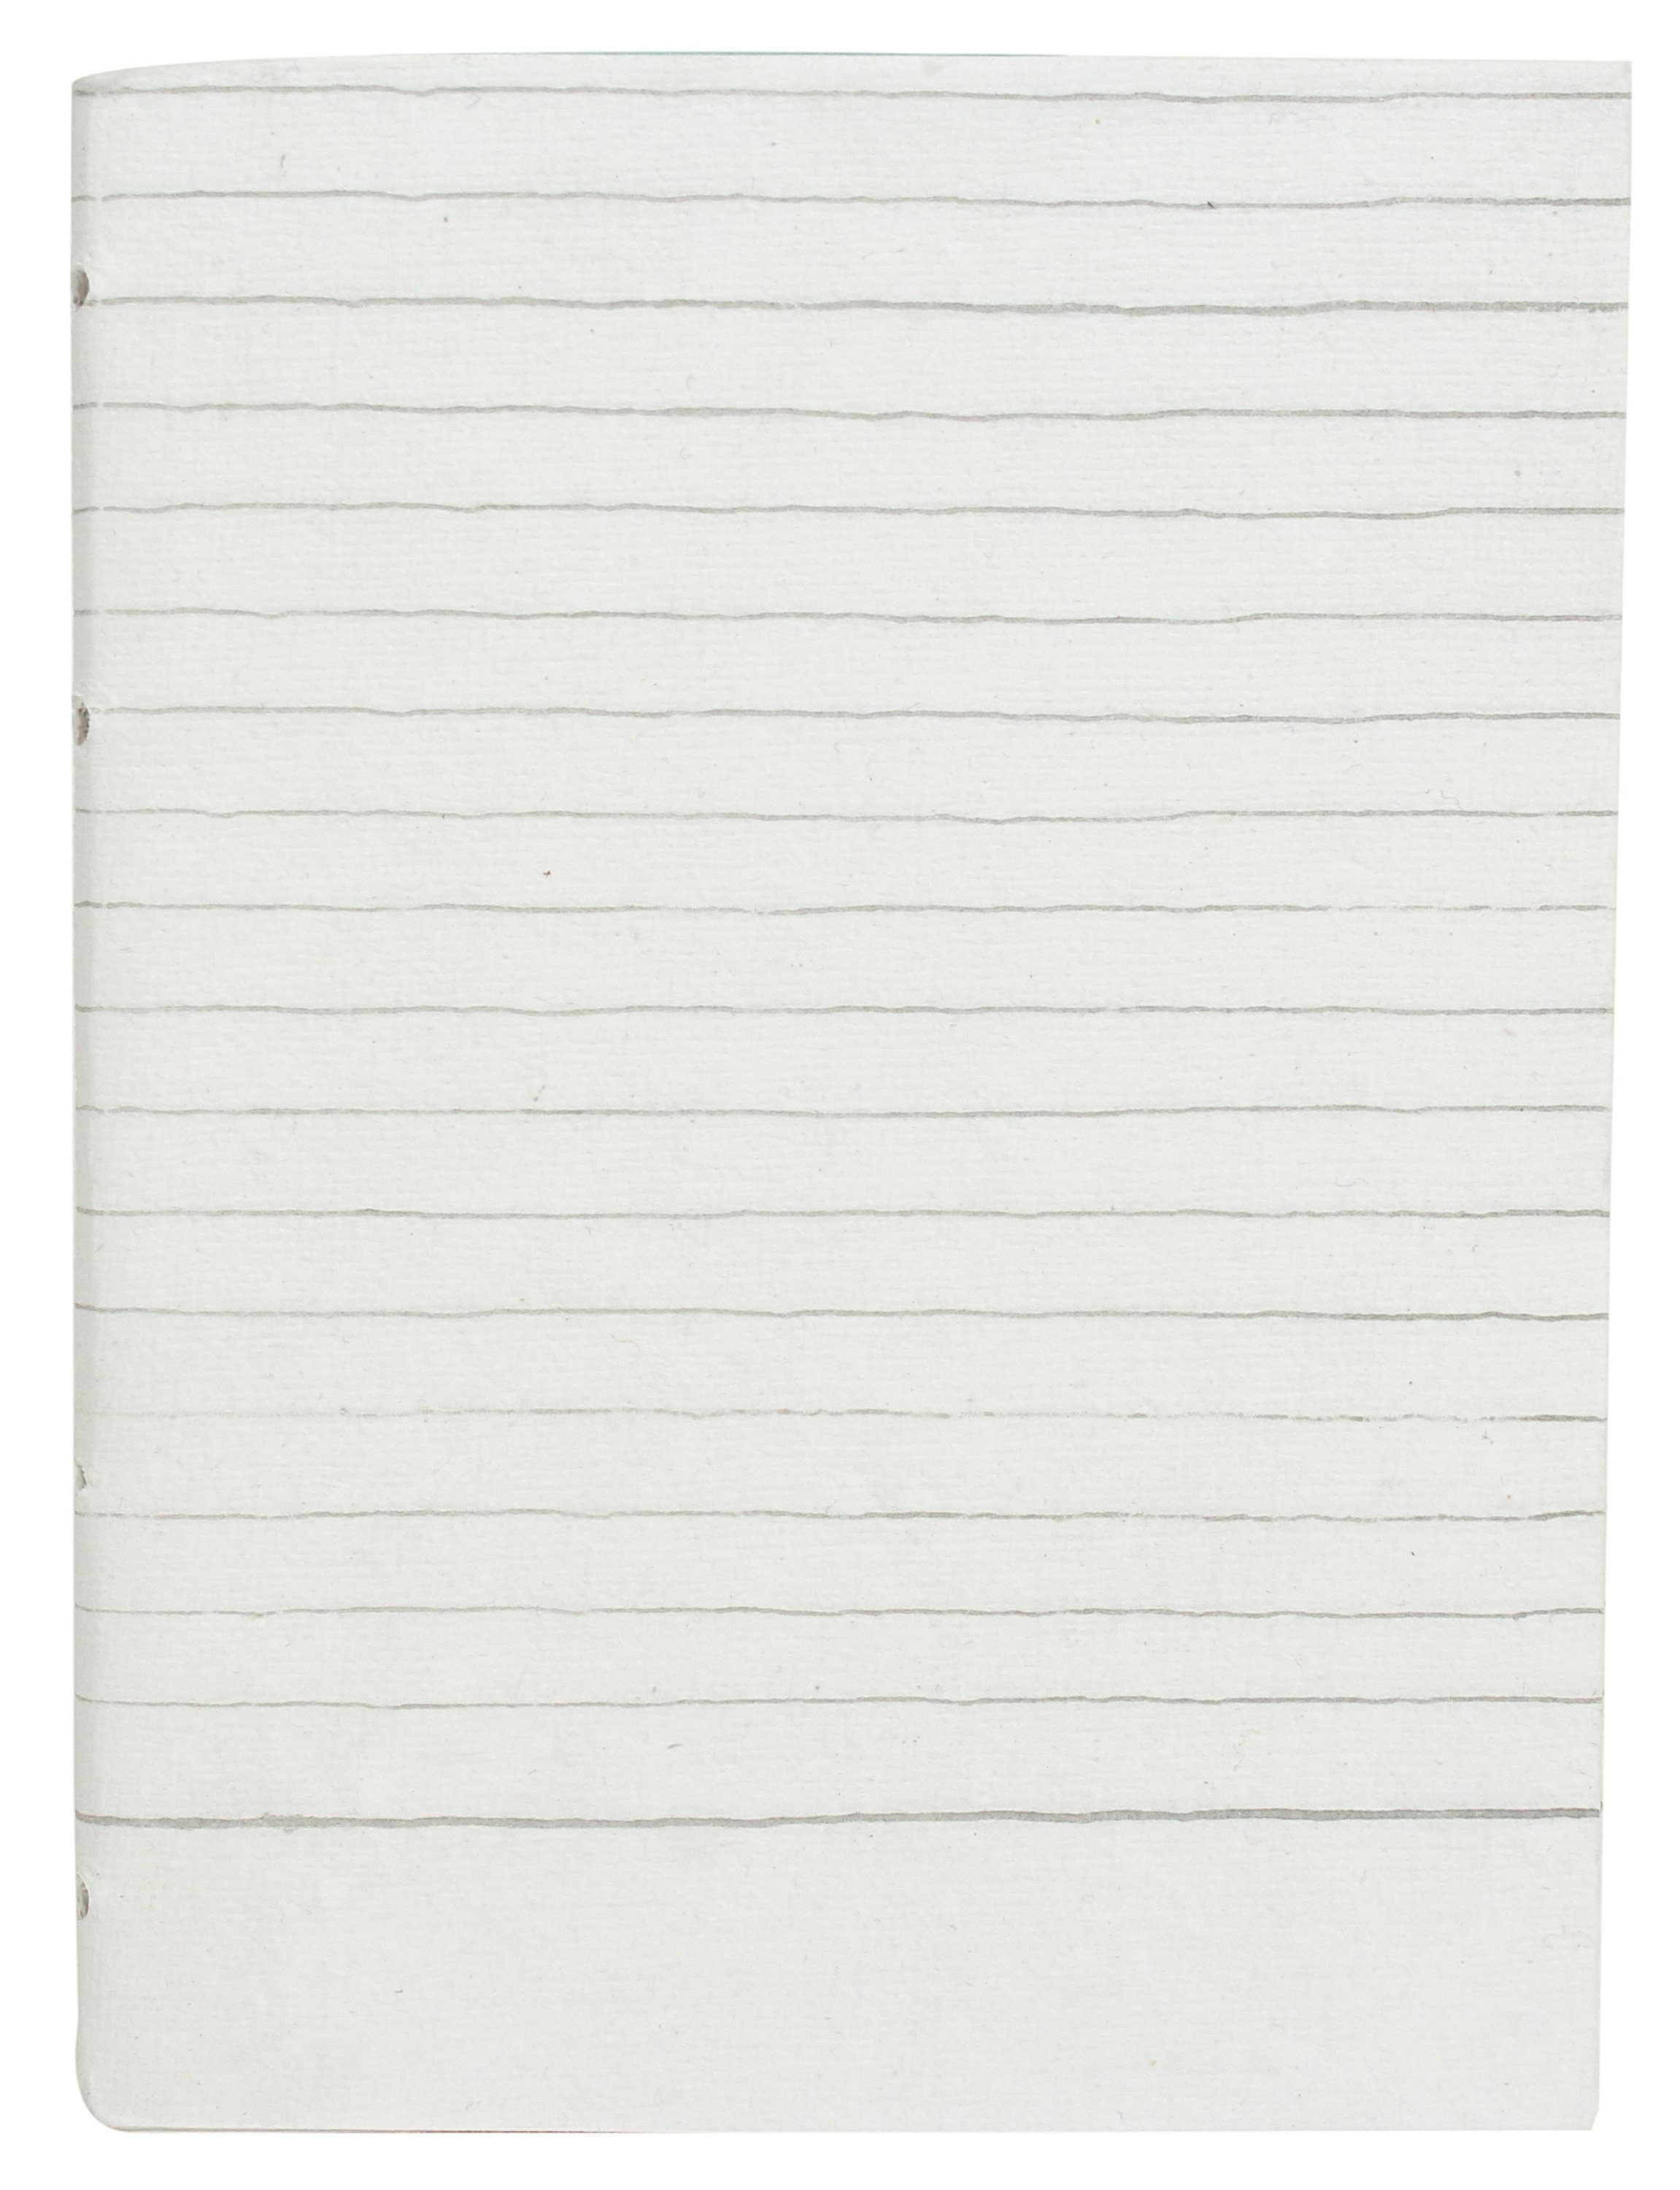 Bucheinlage -Inlay Blanko Gusti 5er Set DIN-A4 (liniert) Naturpapier Briefpapier Asterix, B6 Leder Naturpapier Papier